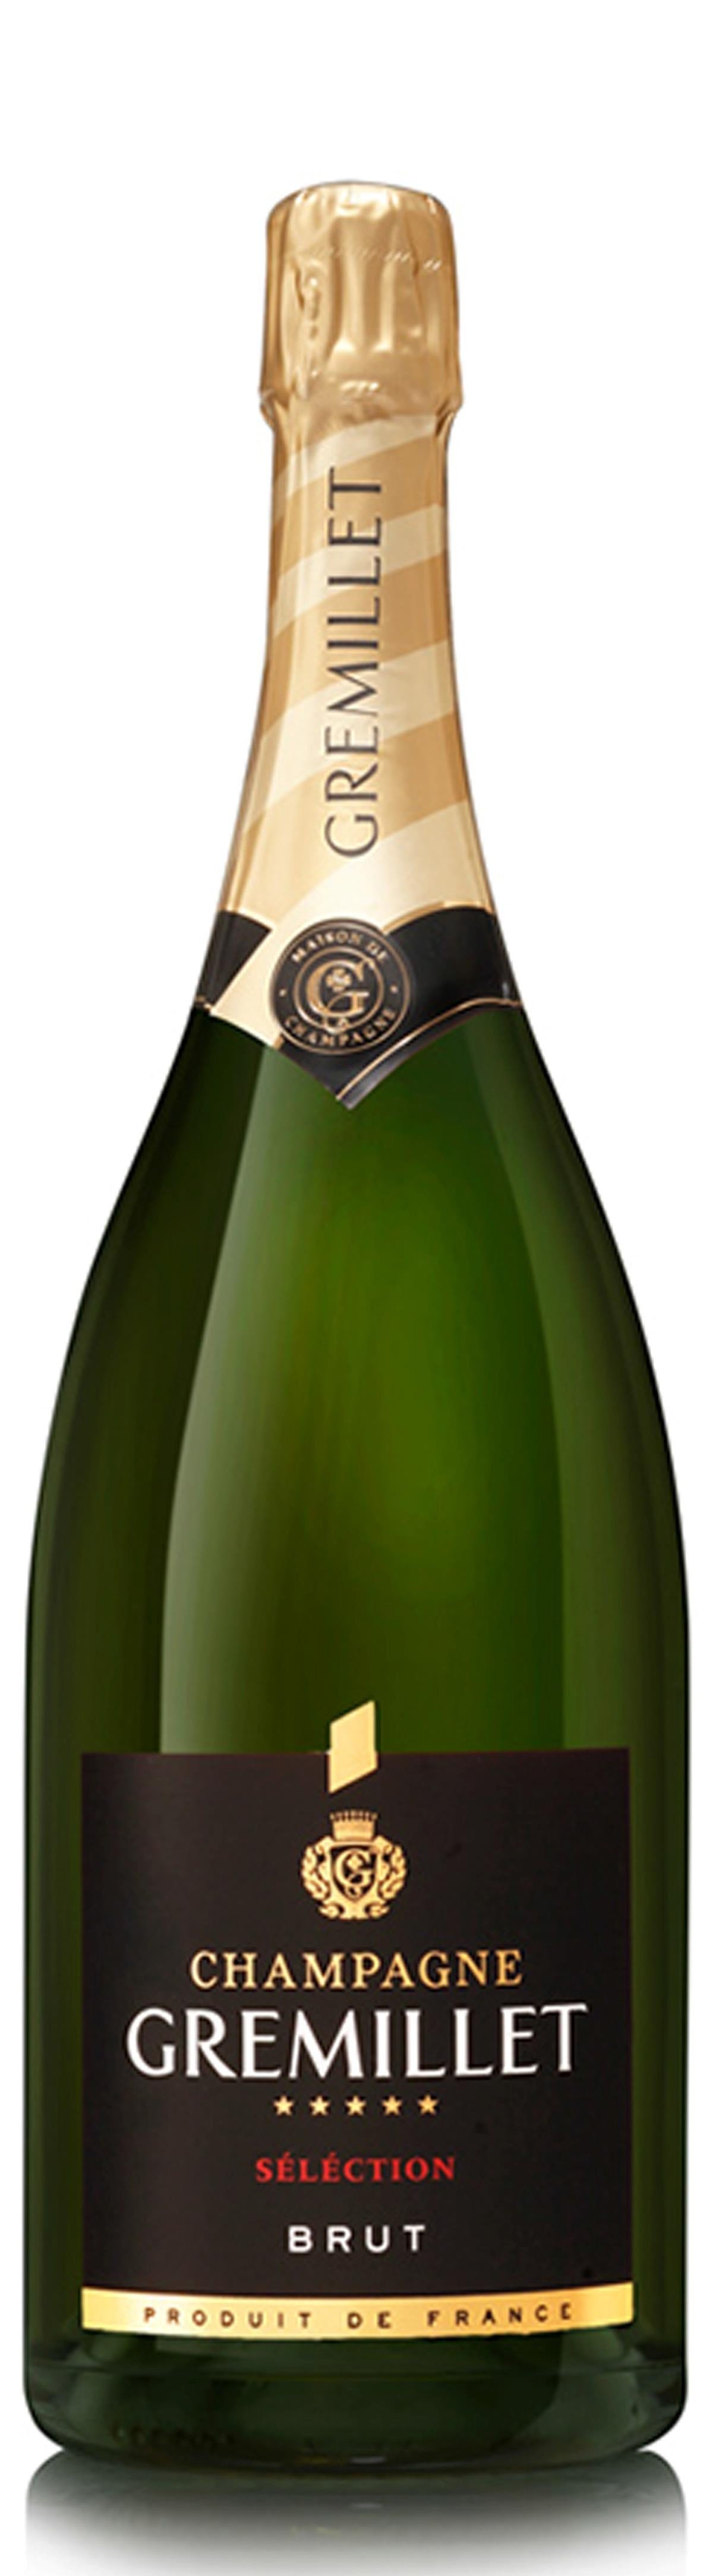 Gremillet Champagne Brut Sélection Magnum 3,0l thumbnail